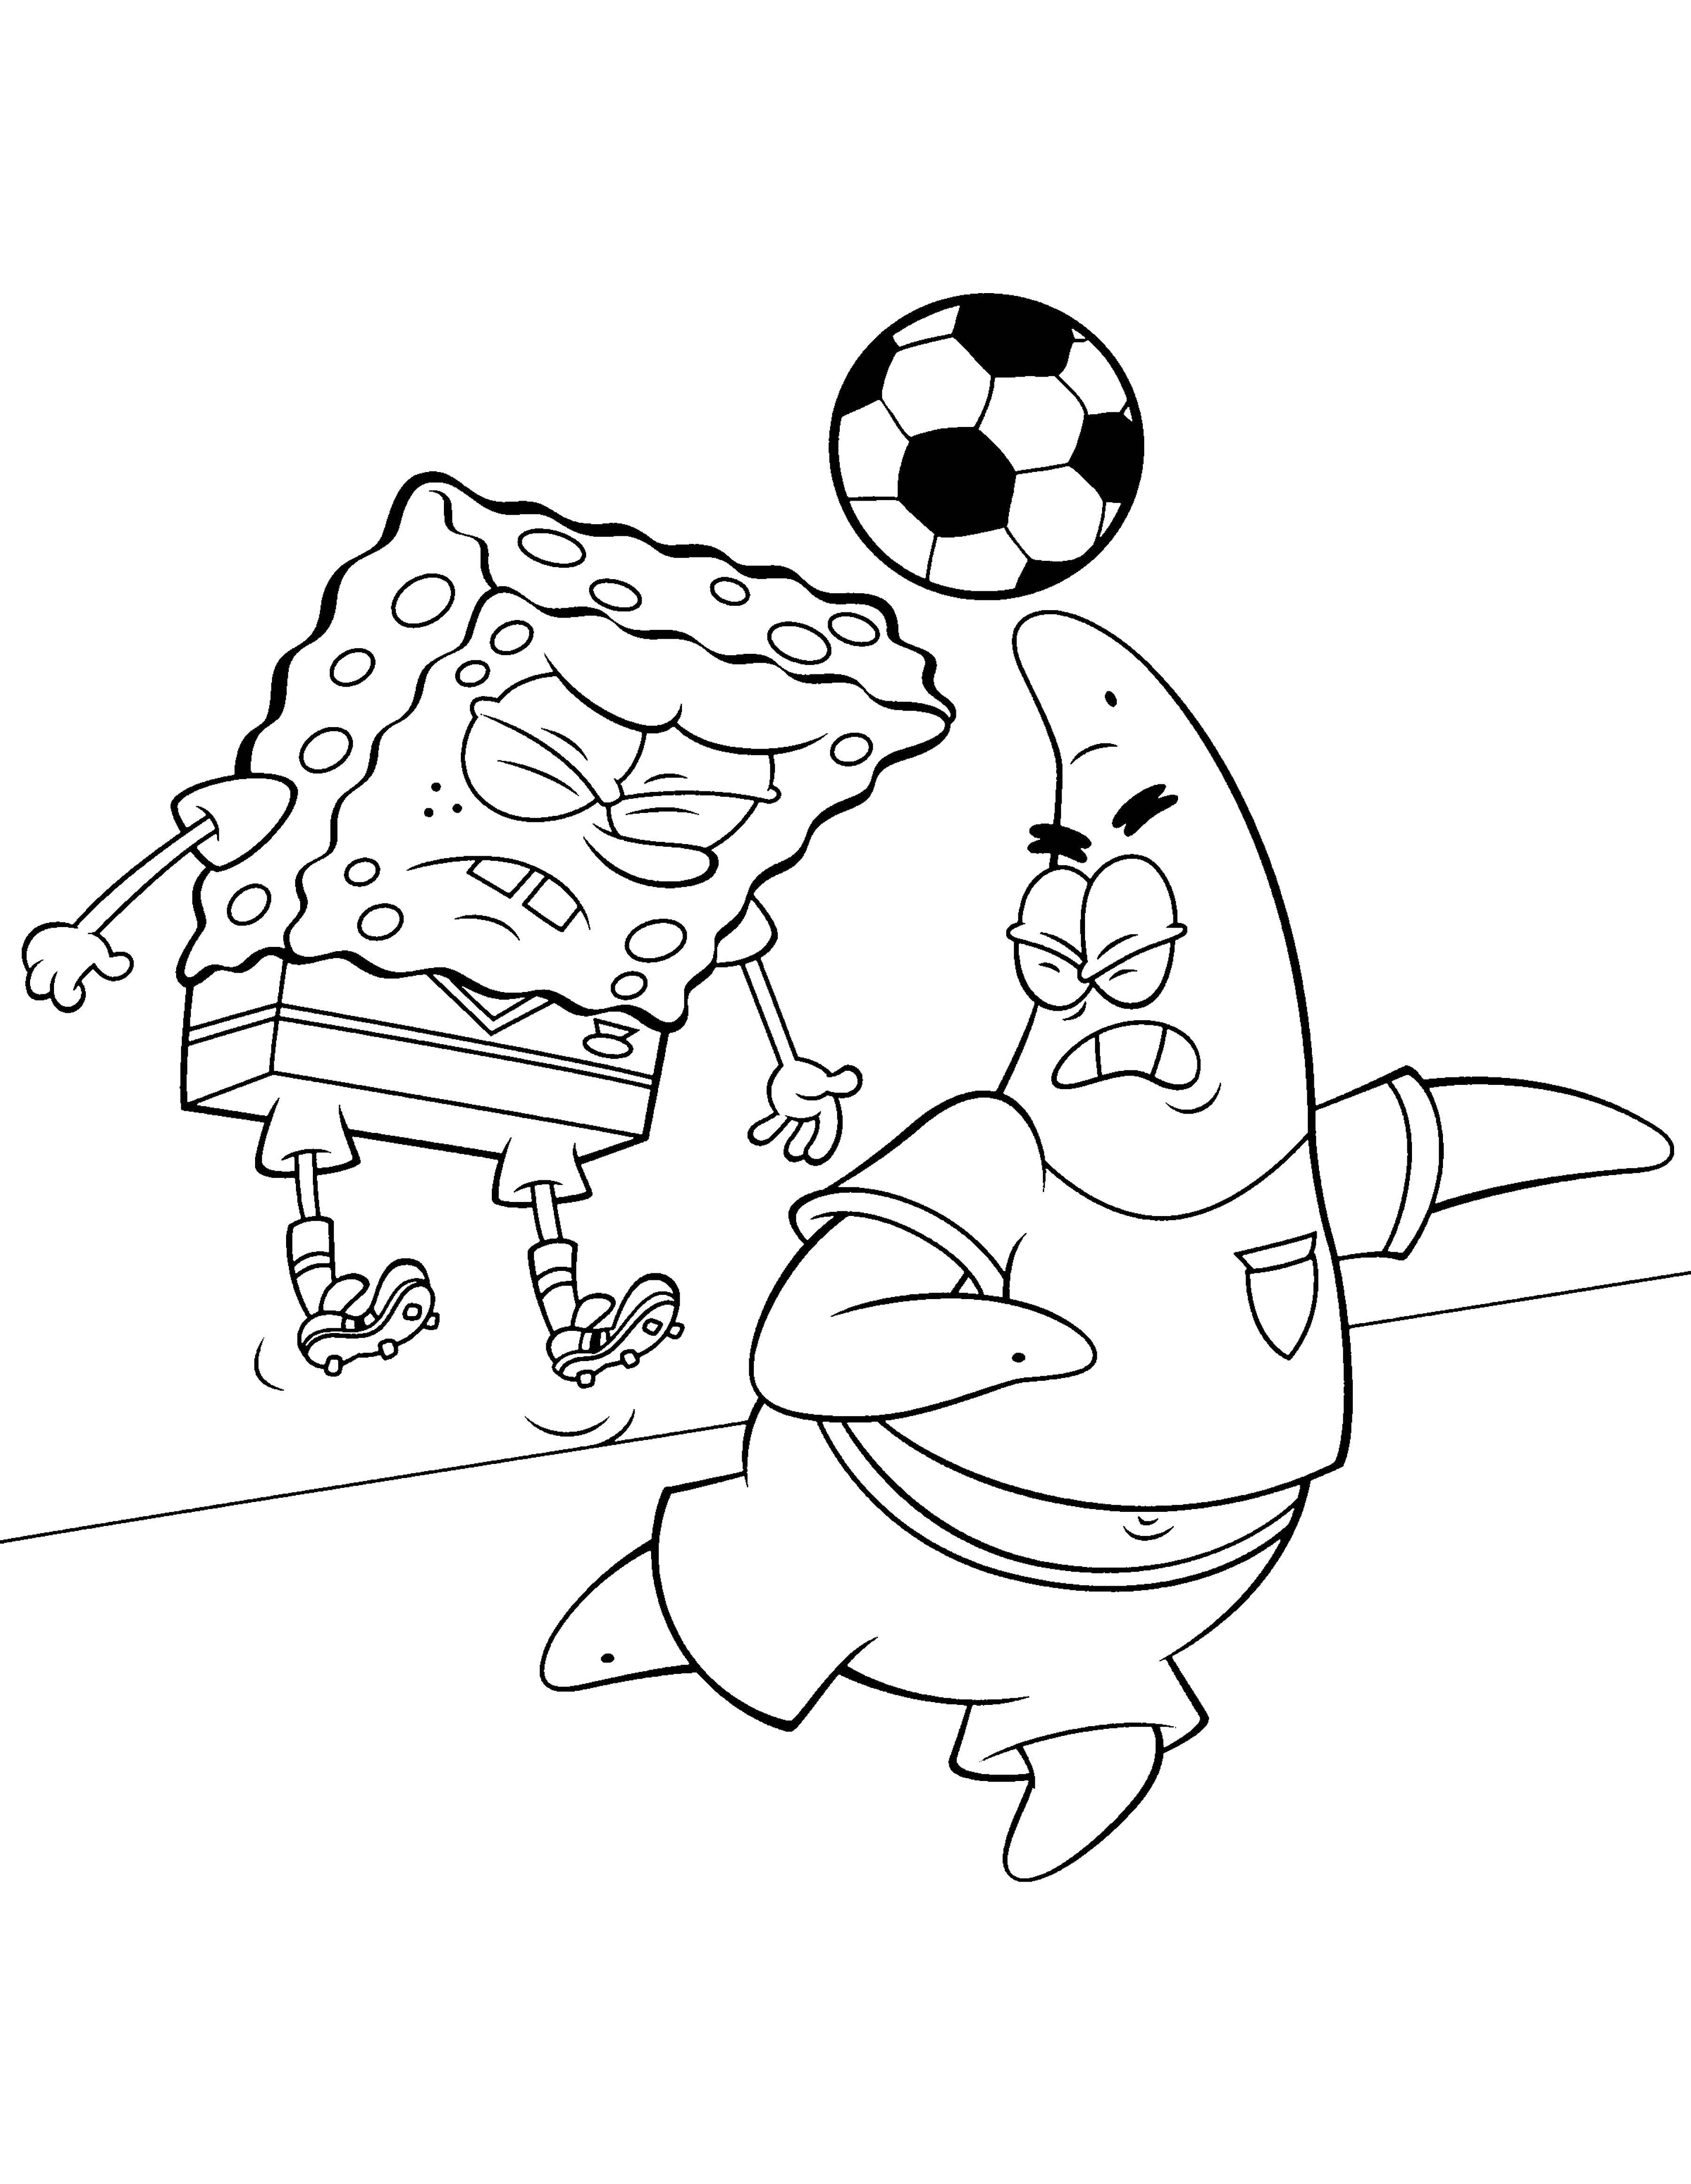 Название: Раскраска Спанч боб и патрик играют в футбол. Категория: Спорт. Теги: Персонаж из мультфильма, Спанч Боб, Губка Боб, Патрик.